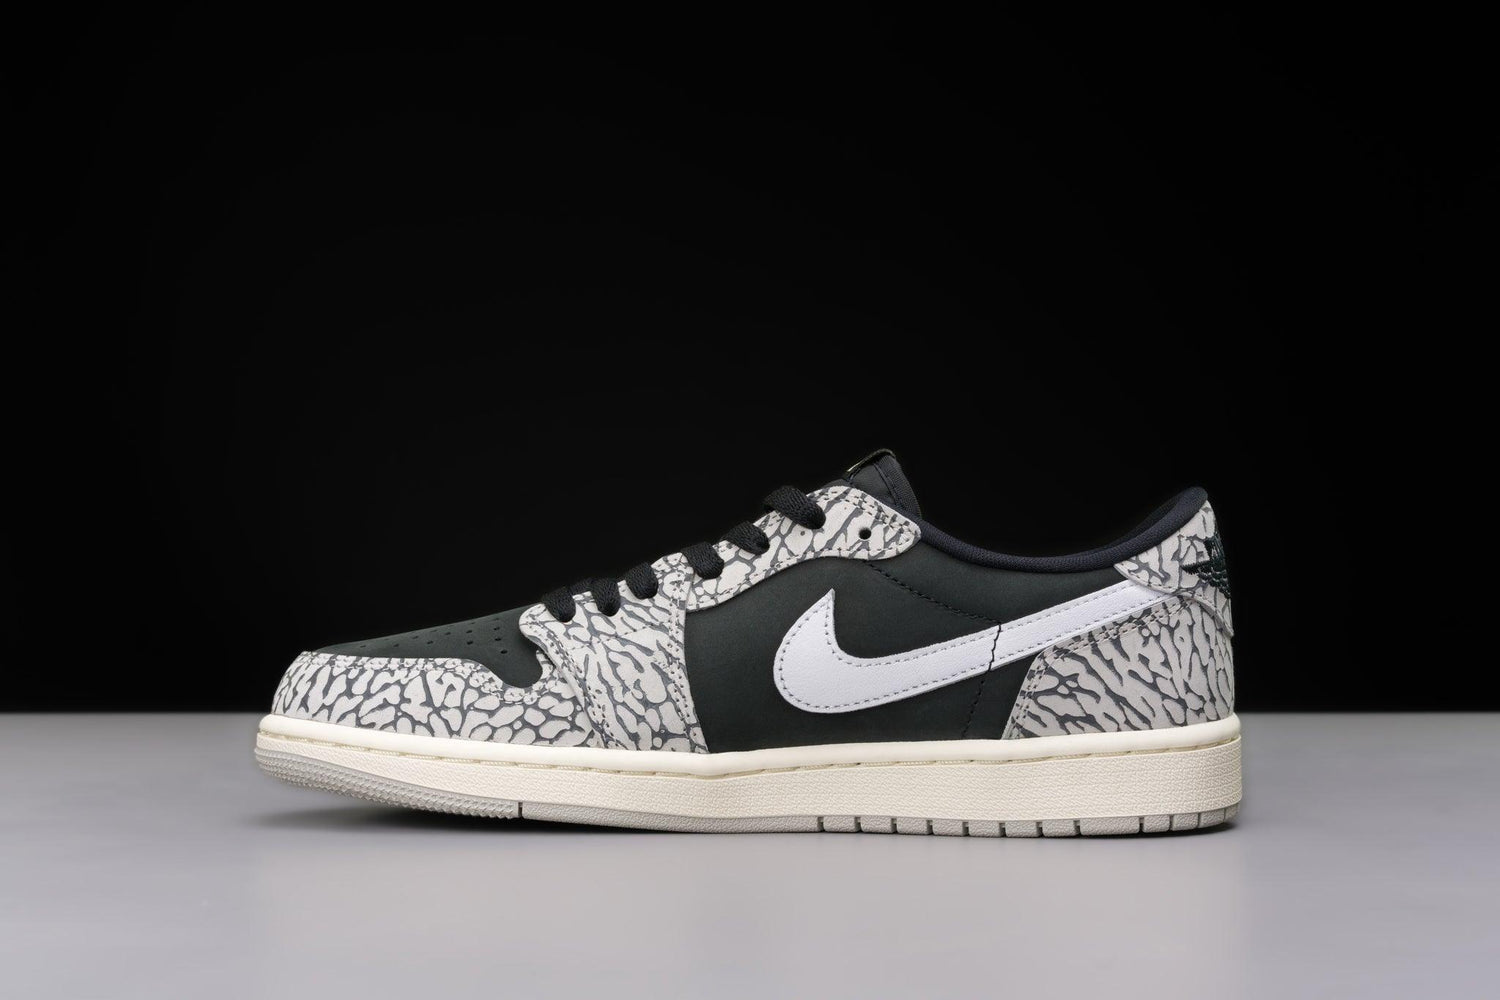 Jordan Sneakers 1 Retro Low OG Black Cement (Women's) - Urlfreeze Shop